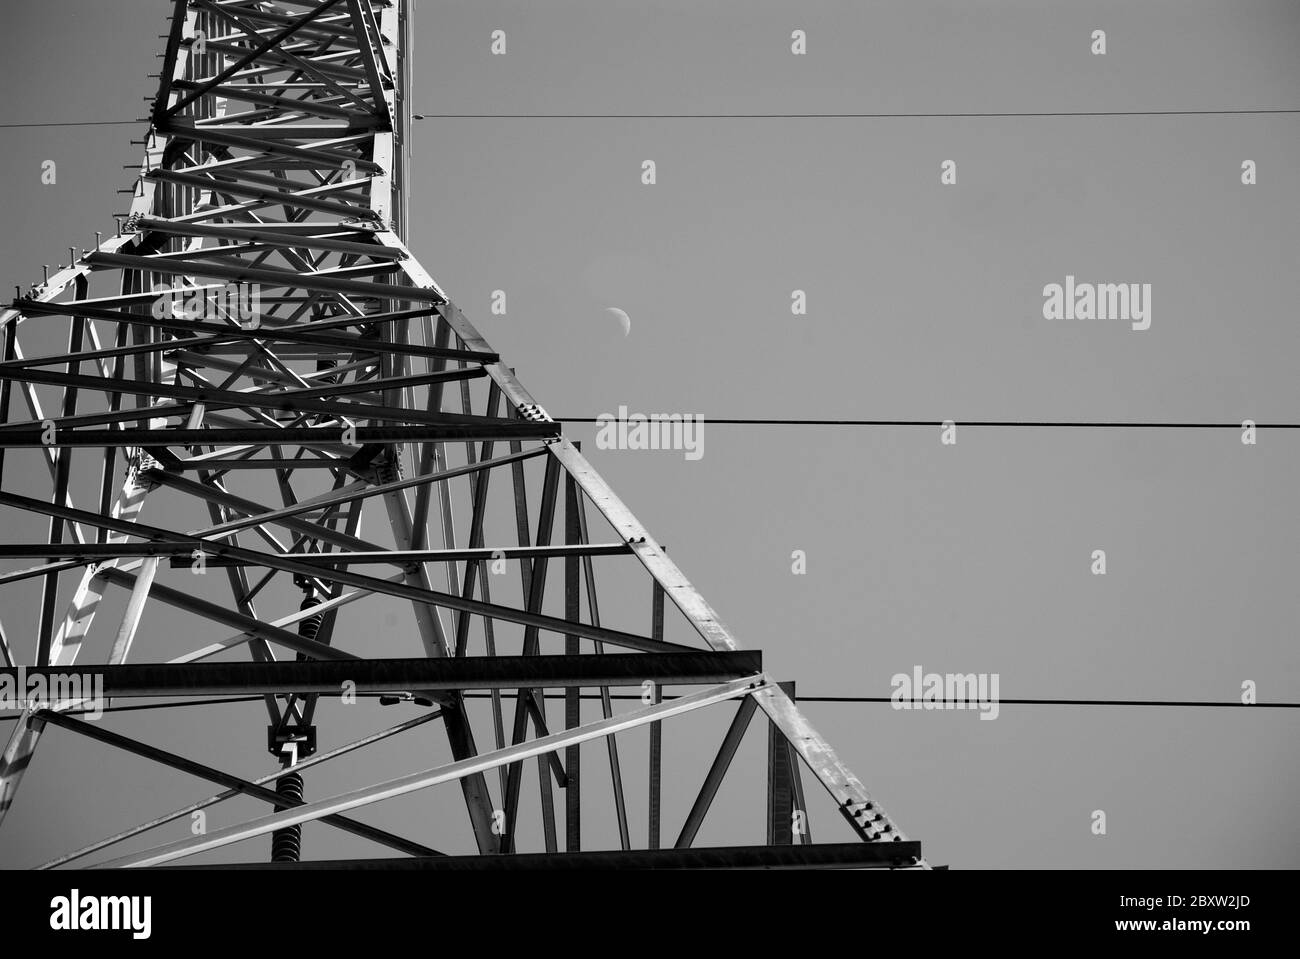 GRIDLOCK: Uno sguardo verticale a 90 gradi alle torri elettriche ad alta tensione dei giorni nostri. Foto Stock